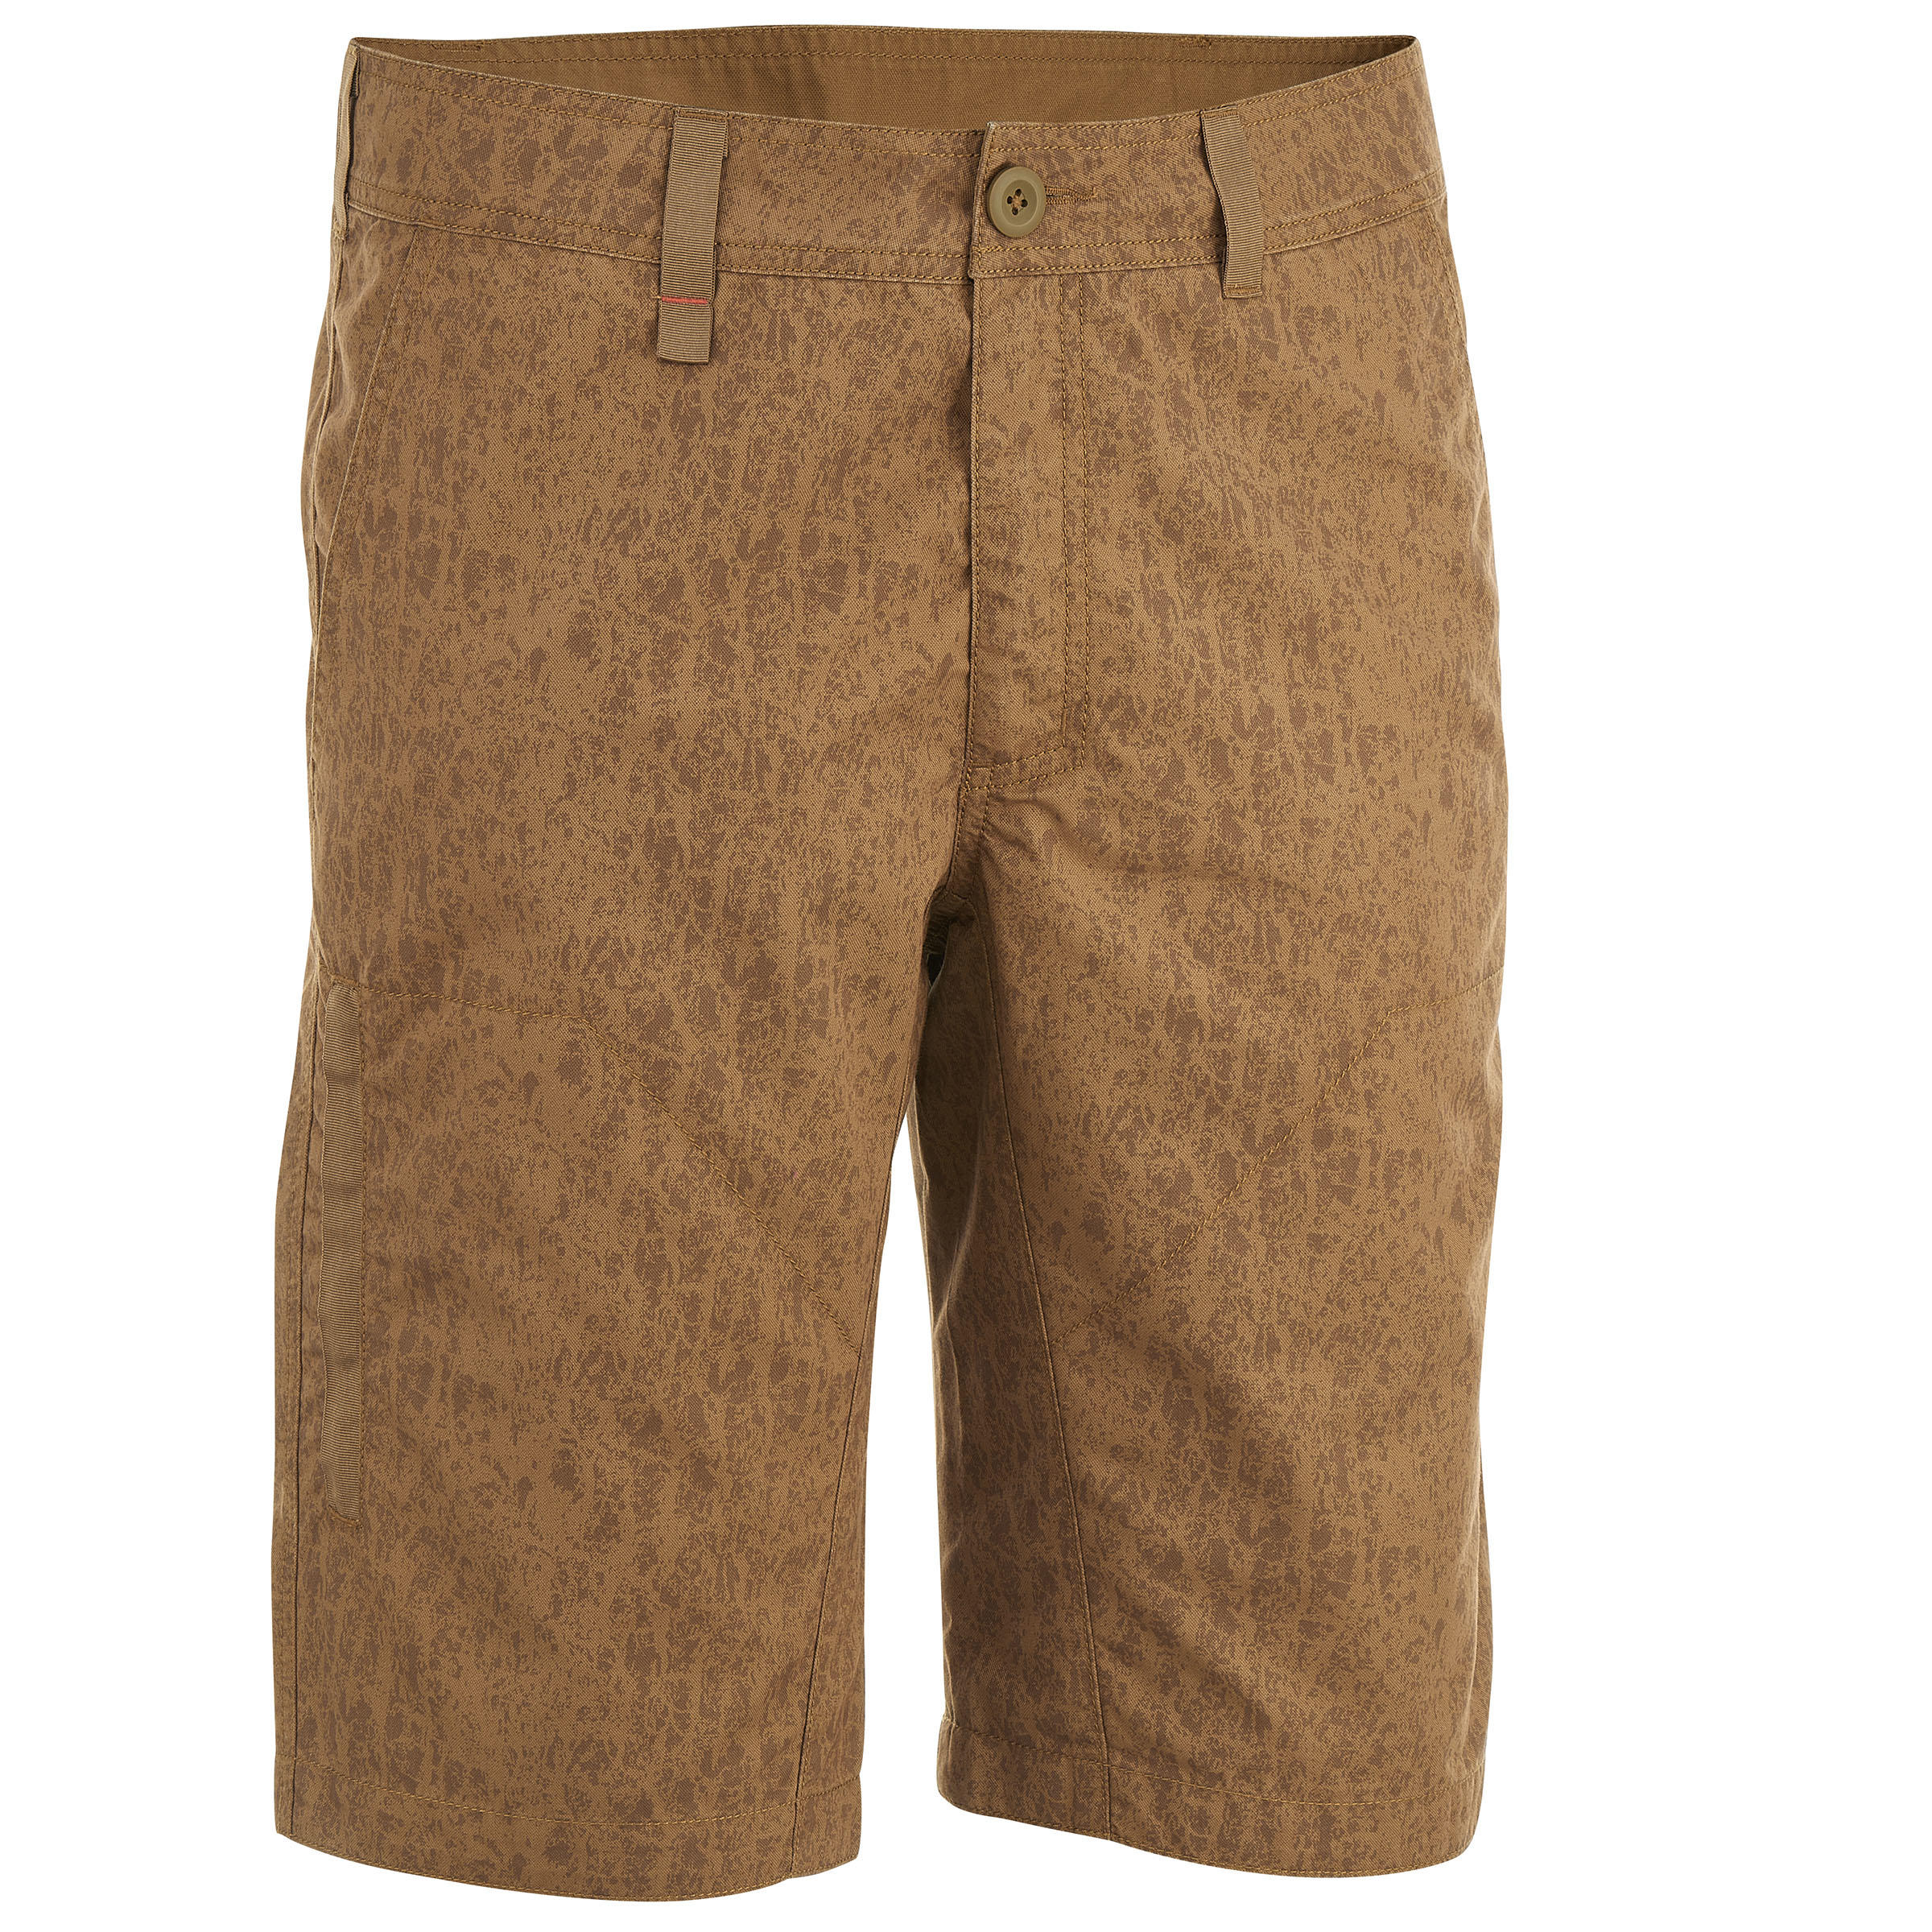 Arpenaz 100 Men's Hiking Shorts - Brown Motif 1/13